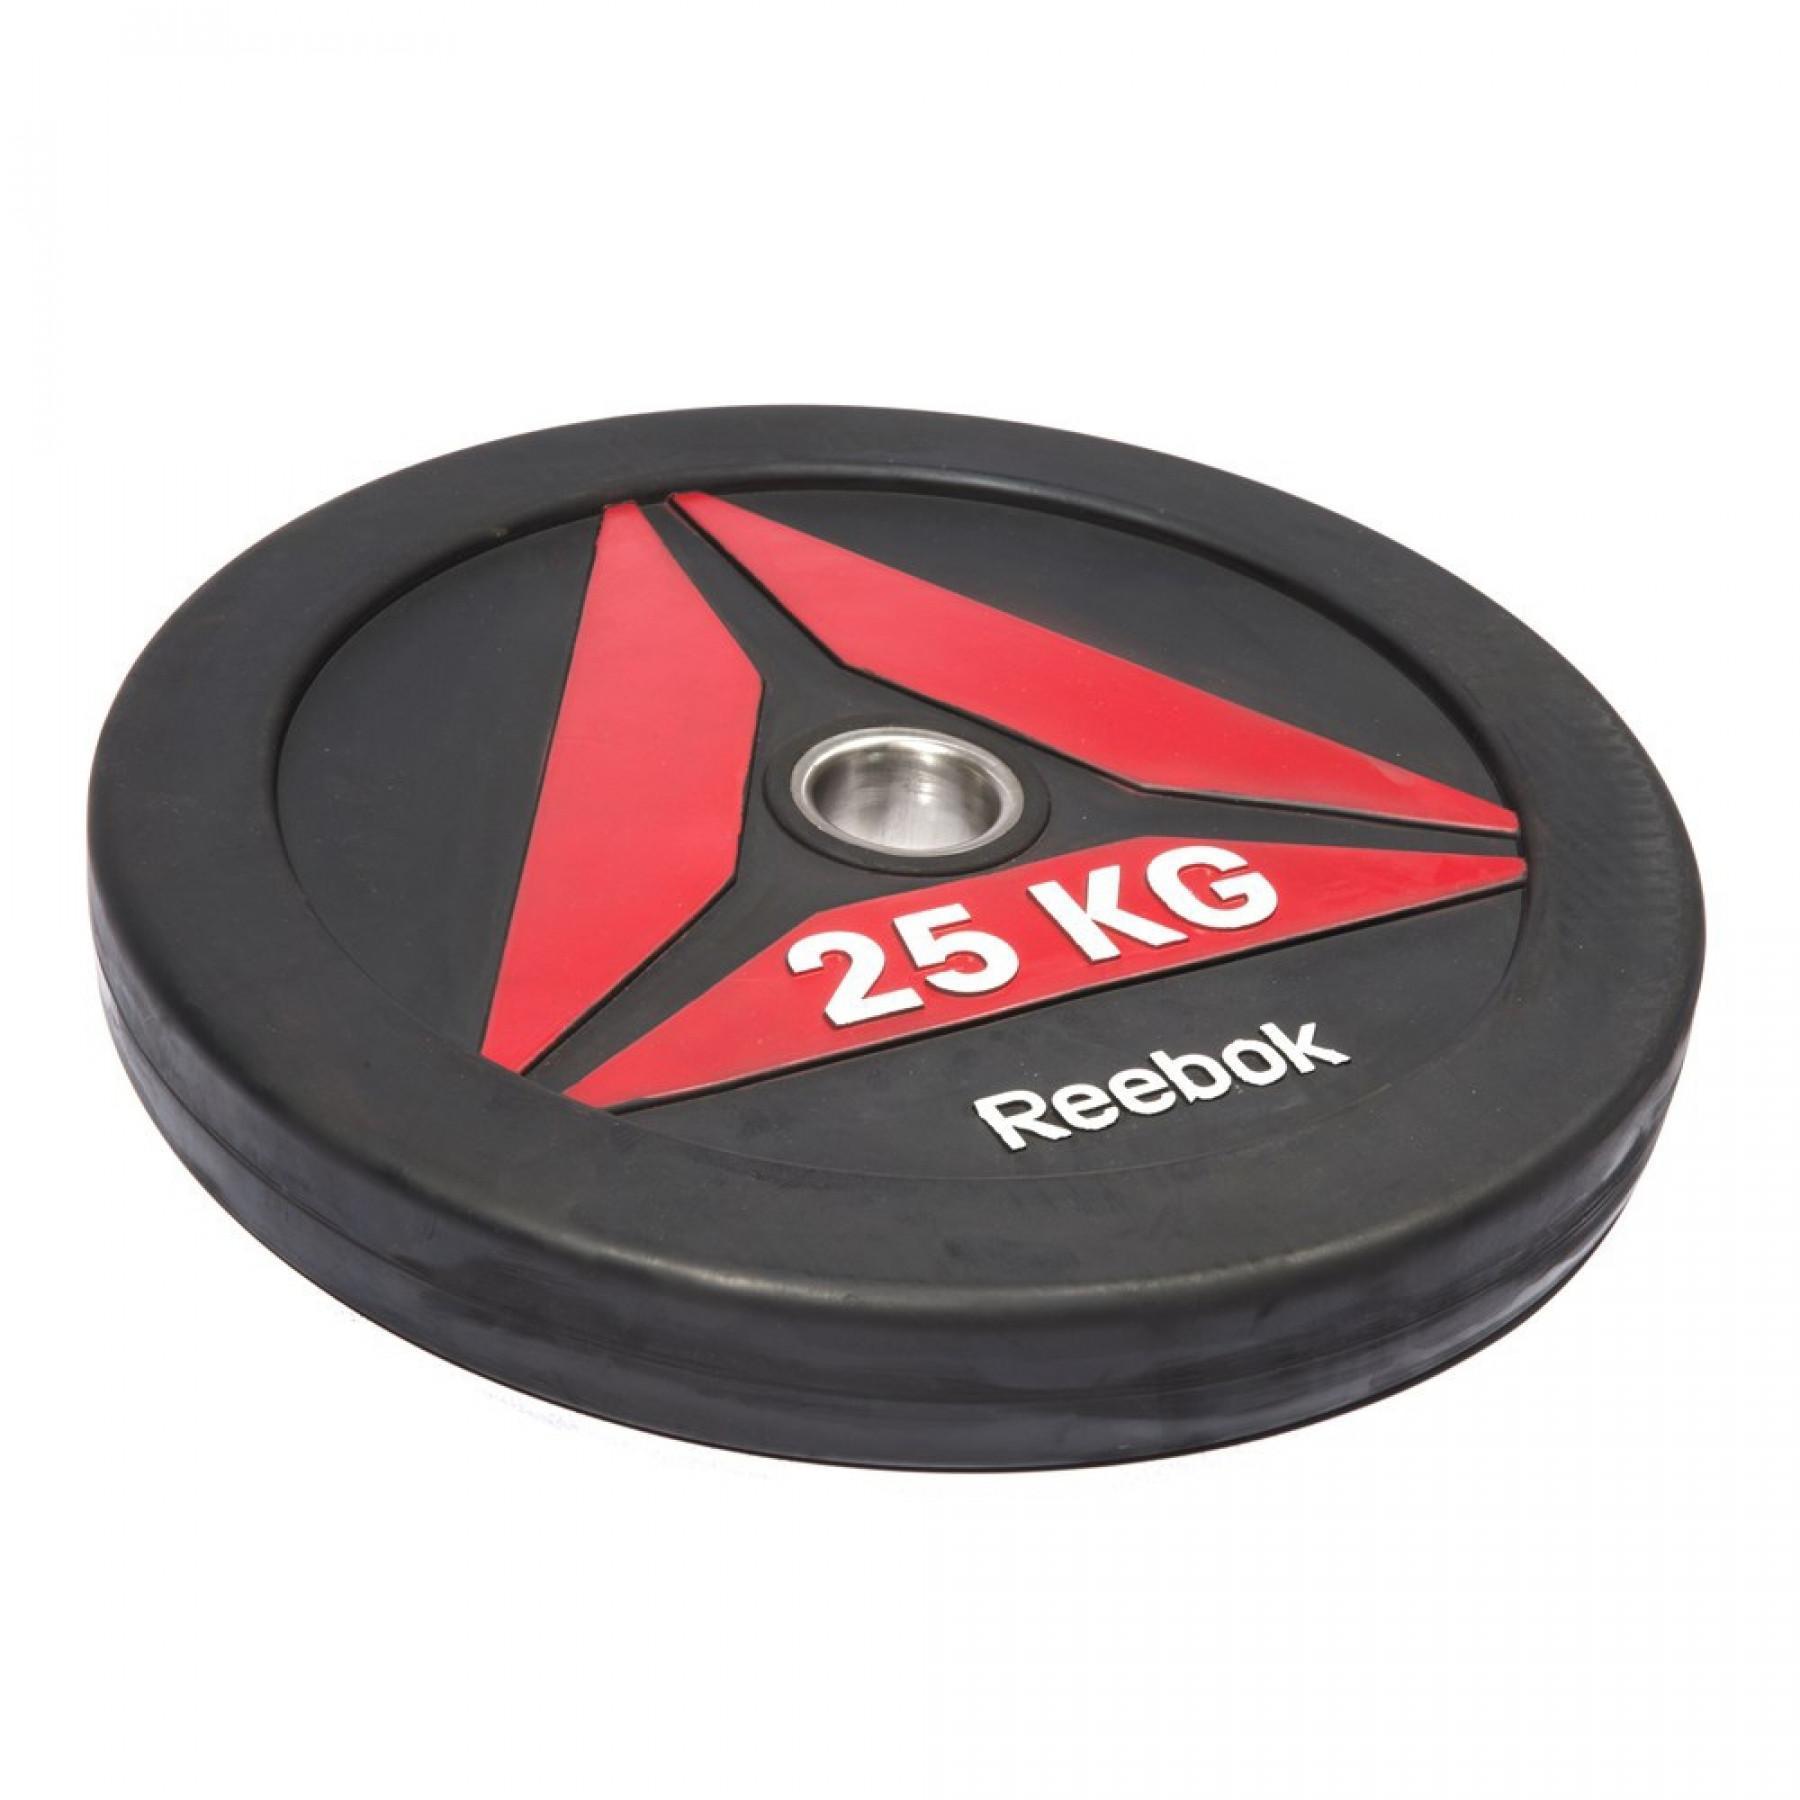 Disque bumper Reebok 15 kg